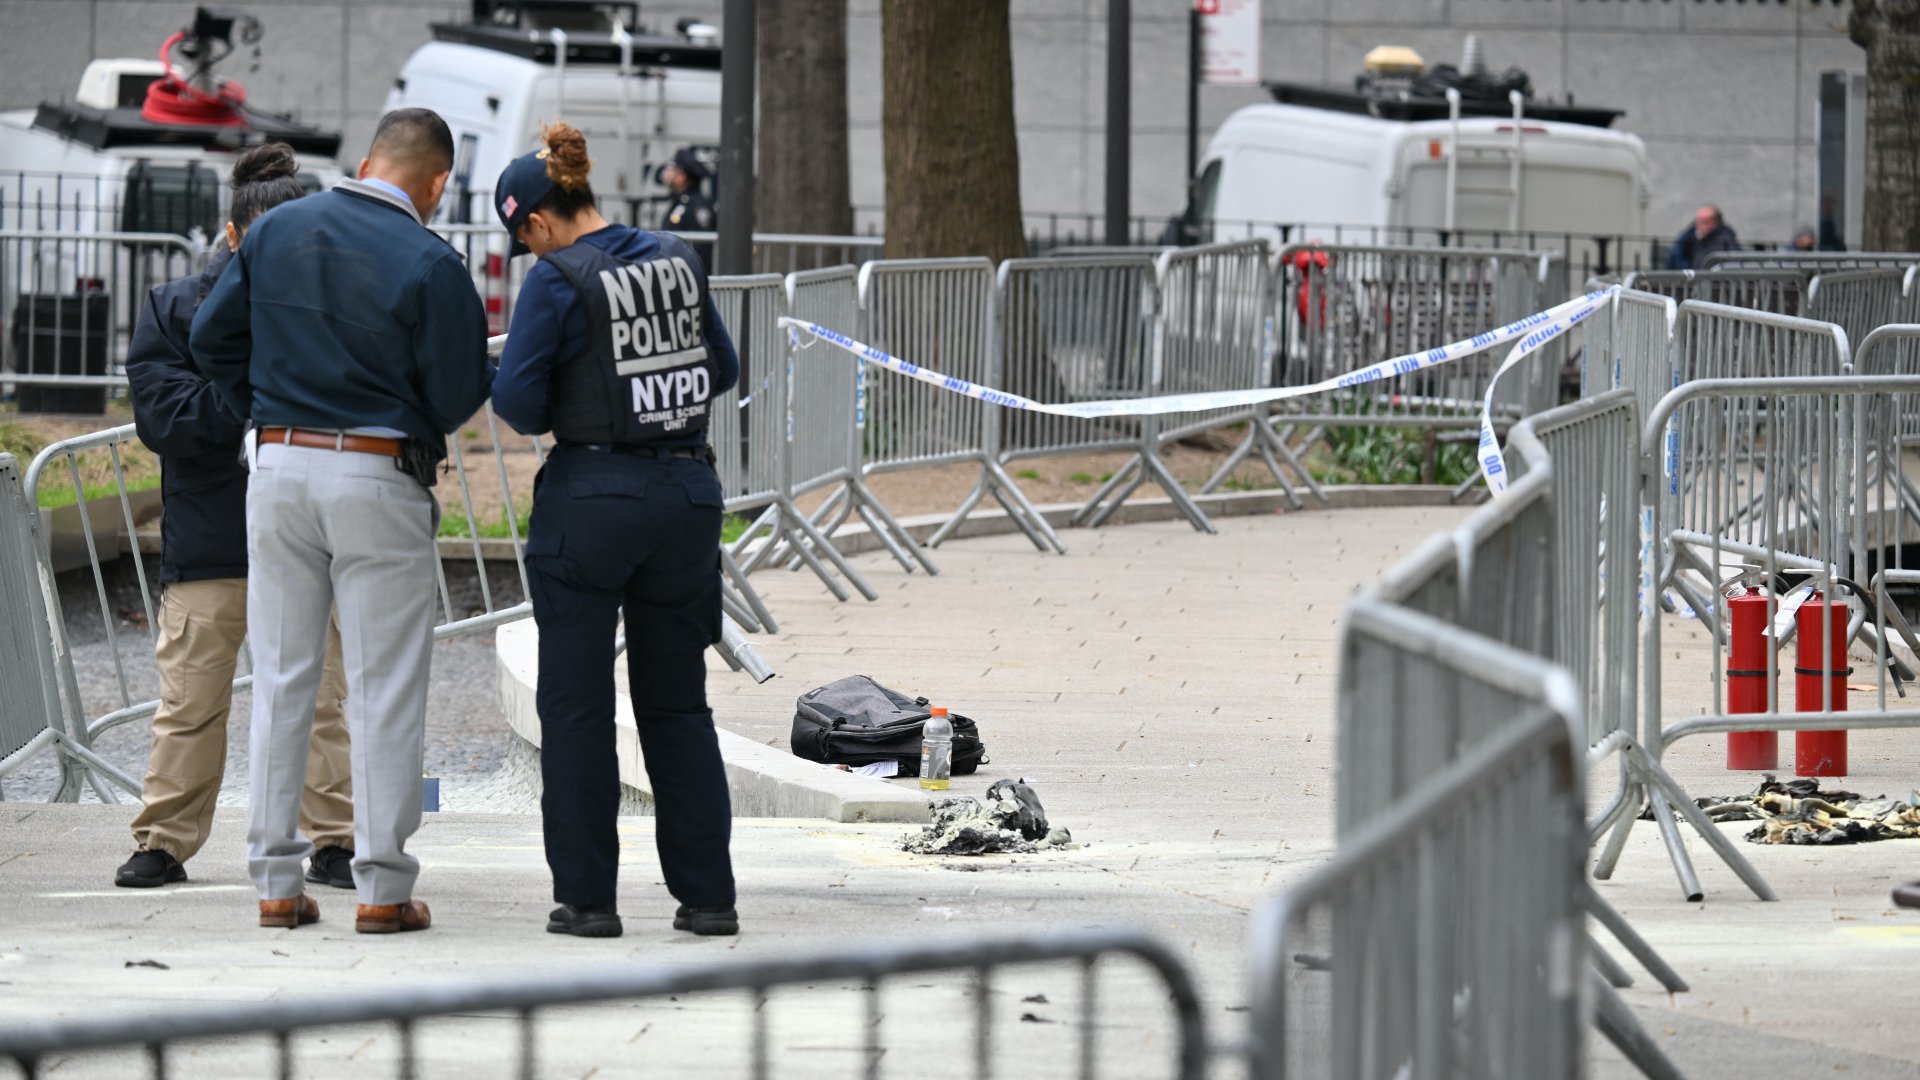 Rendőrök vizsgálják a helyszínt, miután egy férfi felgyújtotta magát a manhattani büntetőbírósággal szembeni parkban Donald Trump amerikai elnök tárgyalása alatt, New Yorkban, 2024. április 19-én